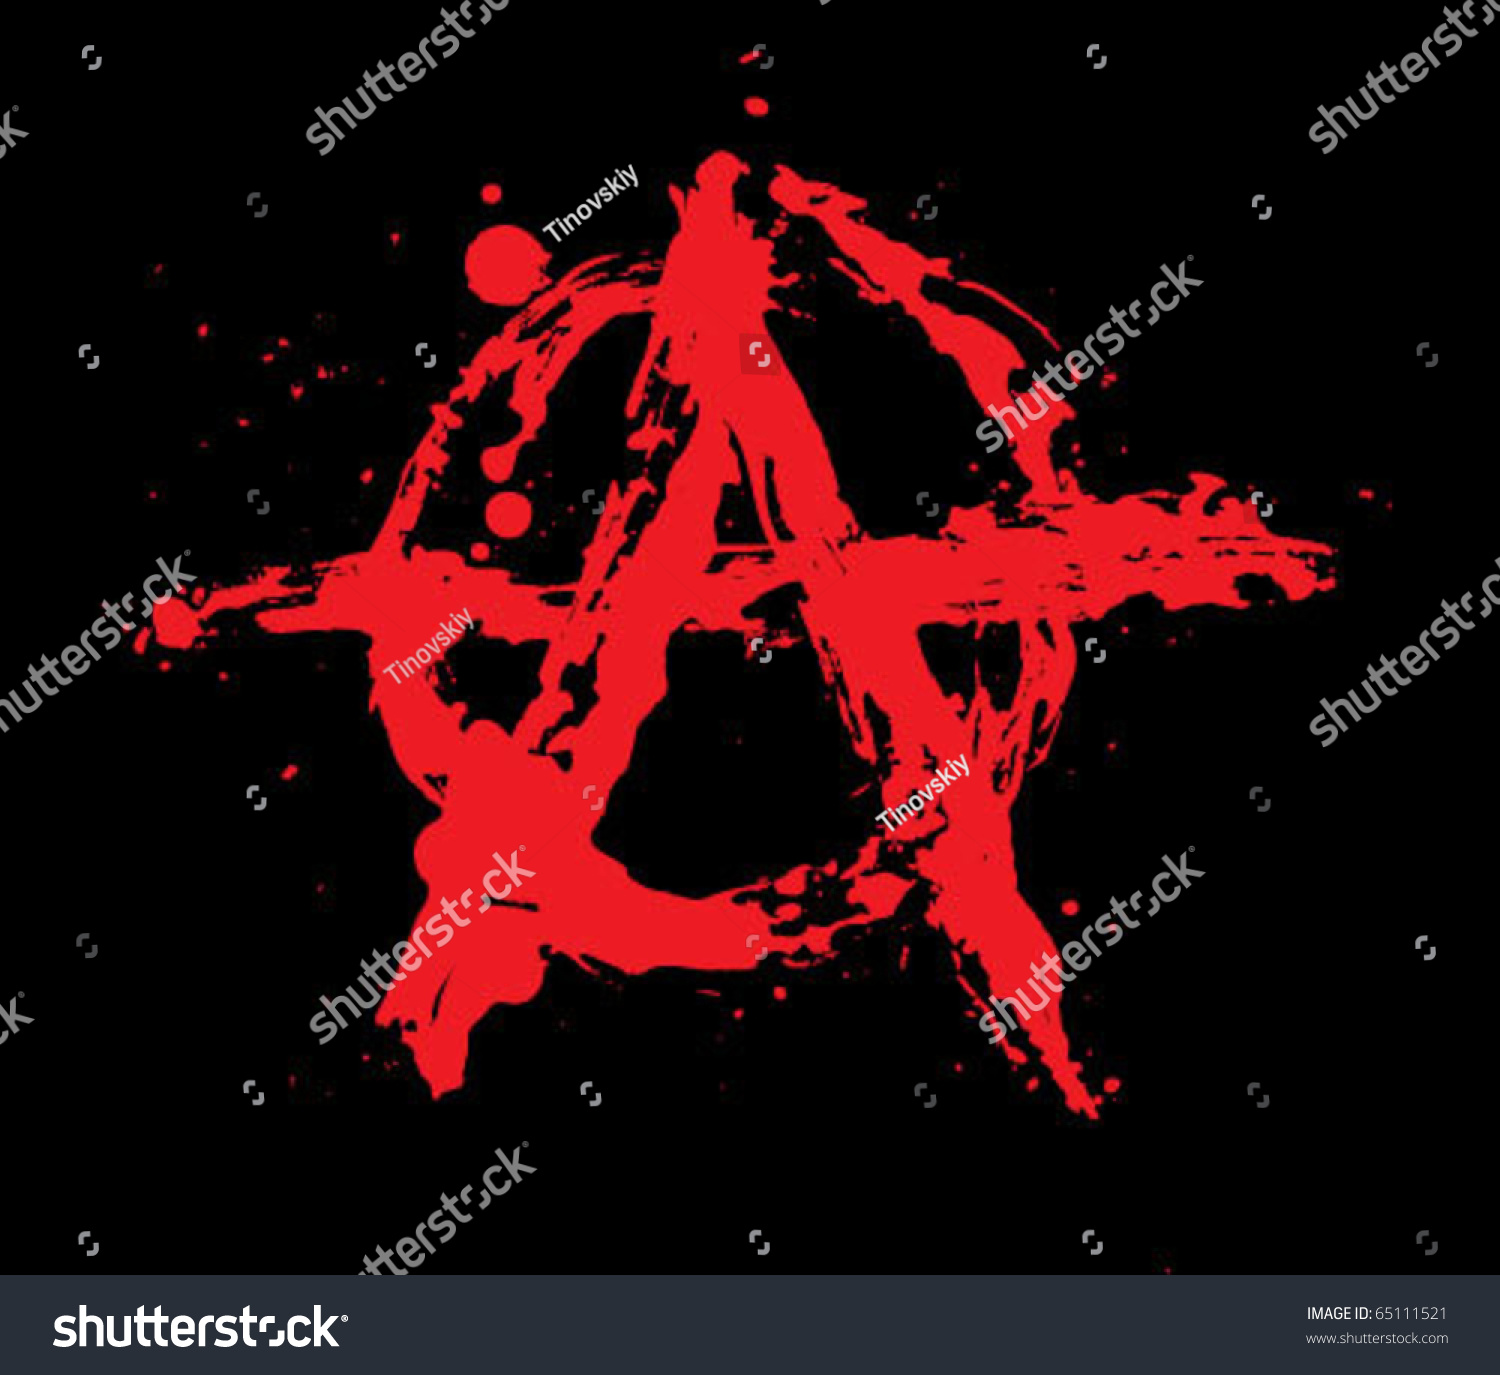 Символ анархии